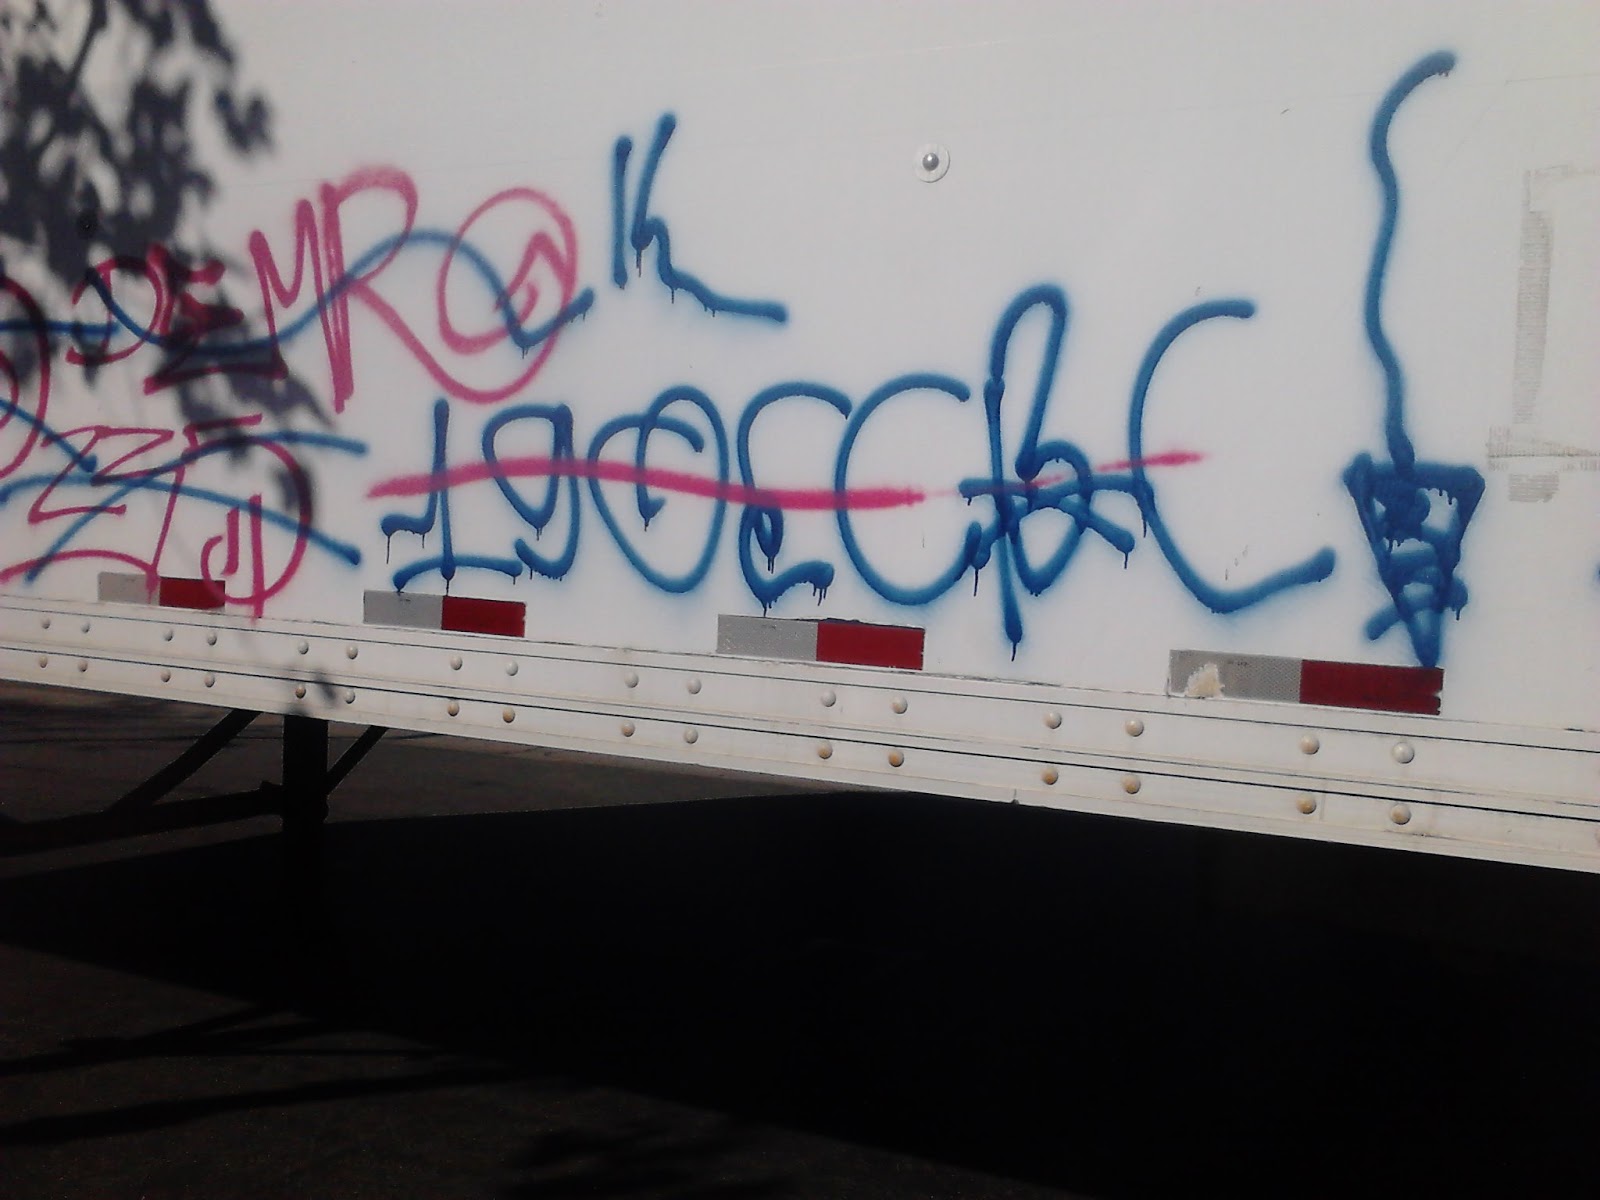 crip gangs graffiti: East coast crip ( 190 block )